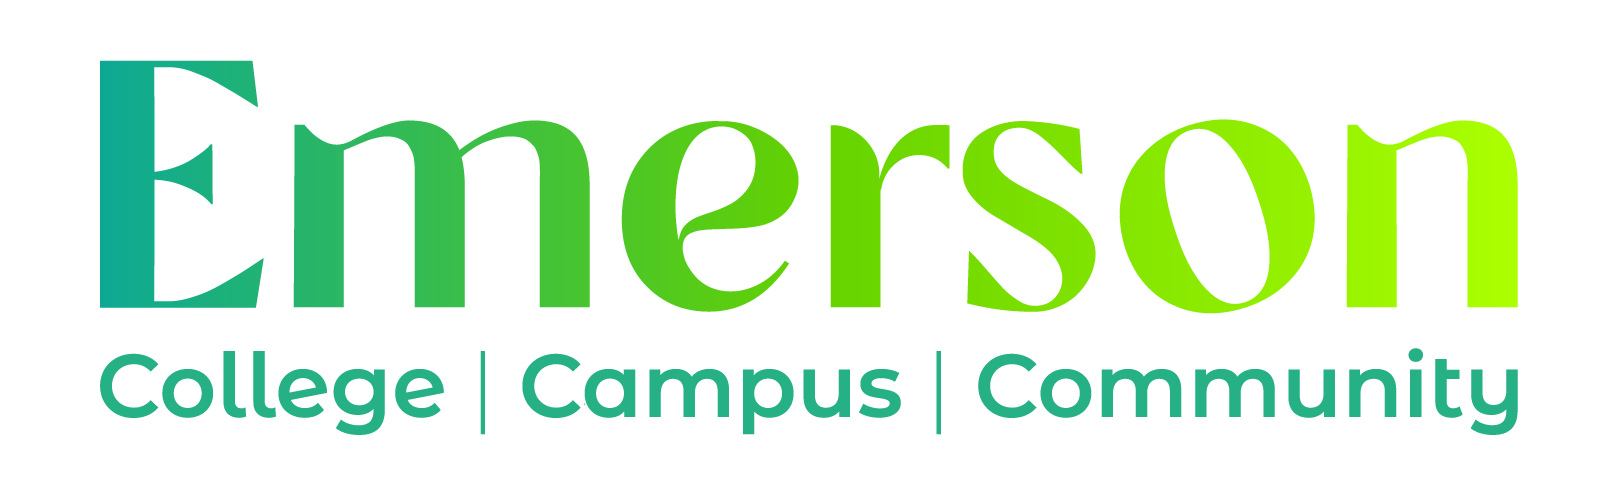 Emerson College Trust logo